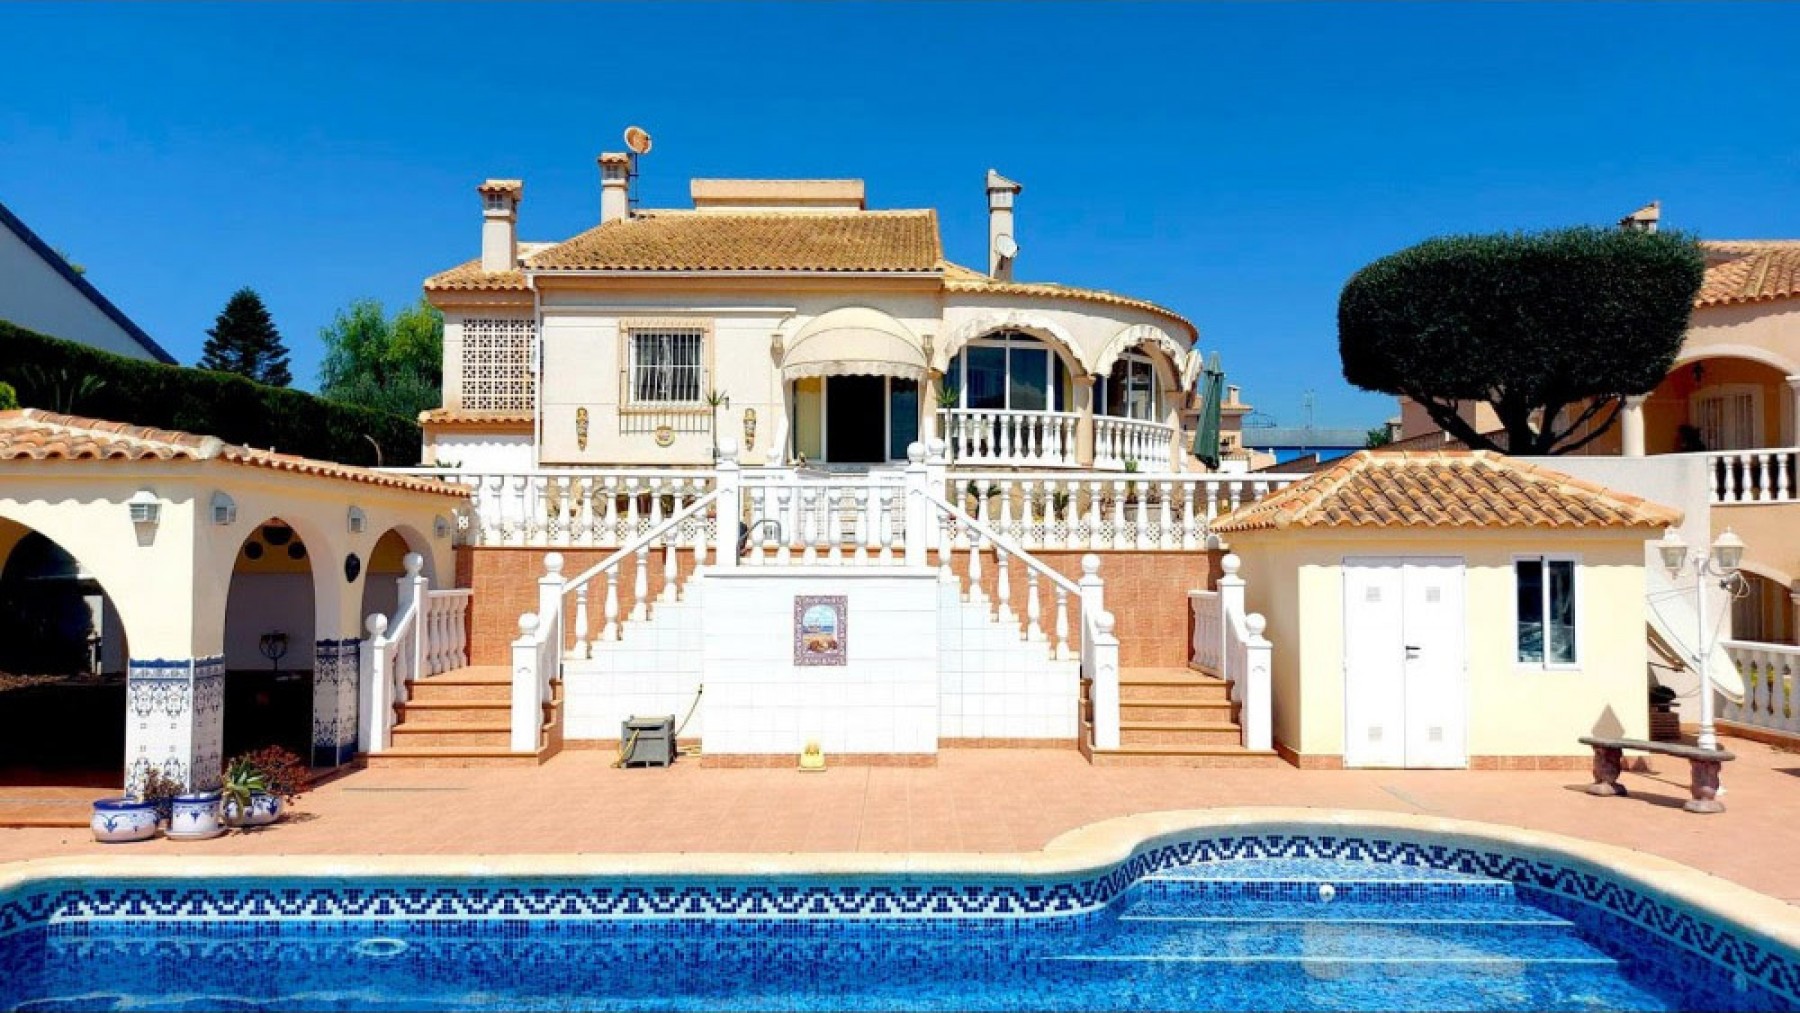 La Marina villa di lusso in vendita6159520923696